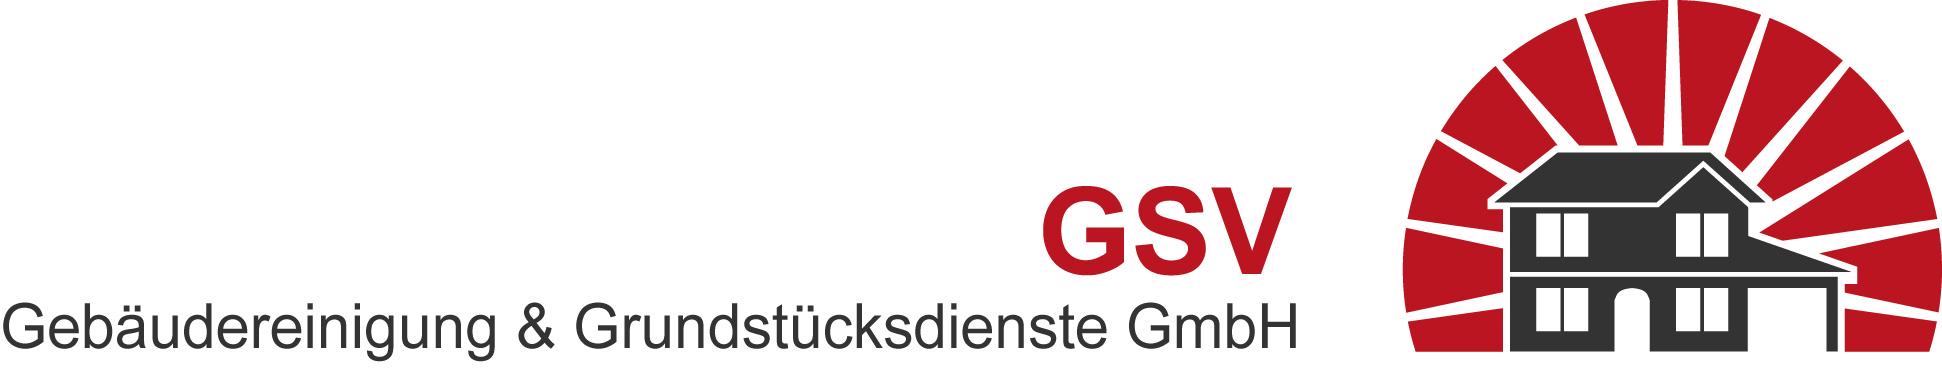 Logo GSV Gebäudereinigung & Grundstücksdienste GmbH